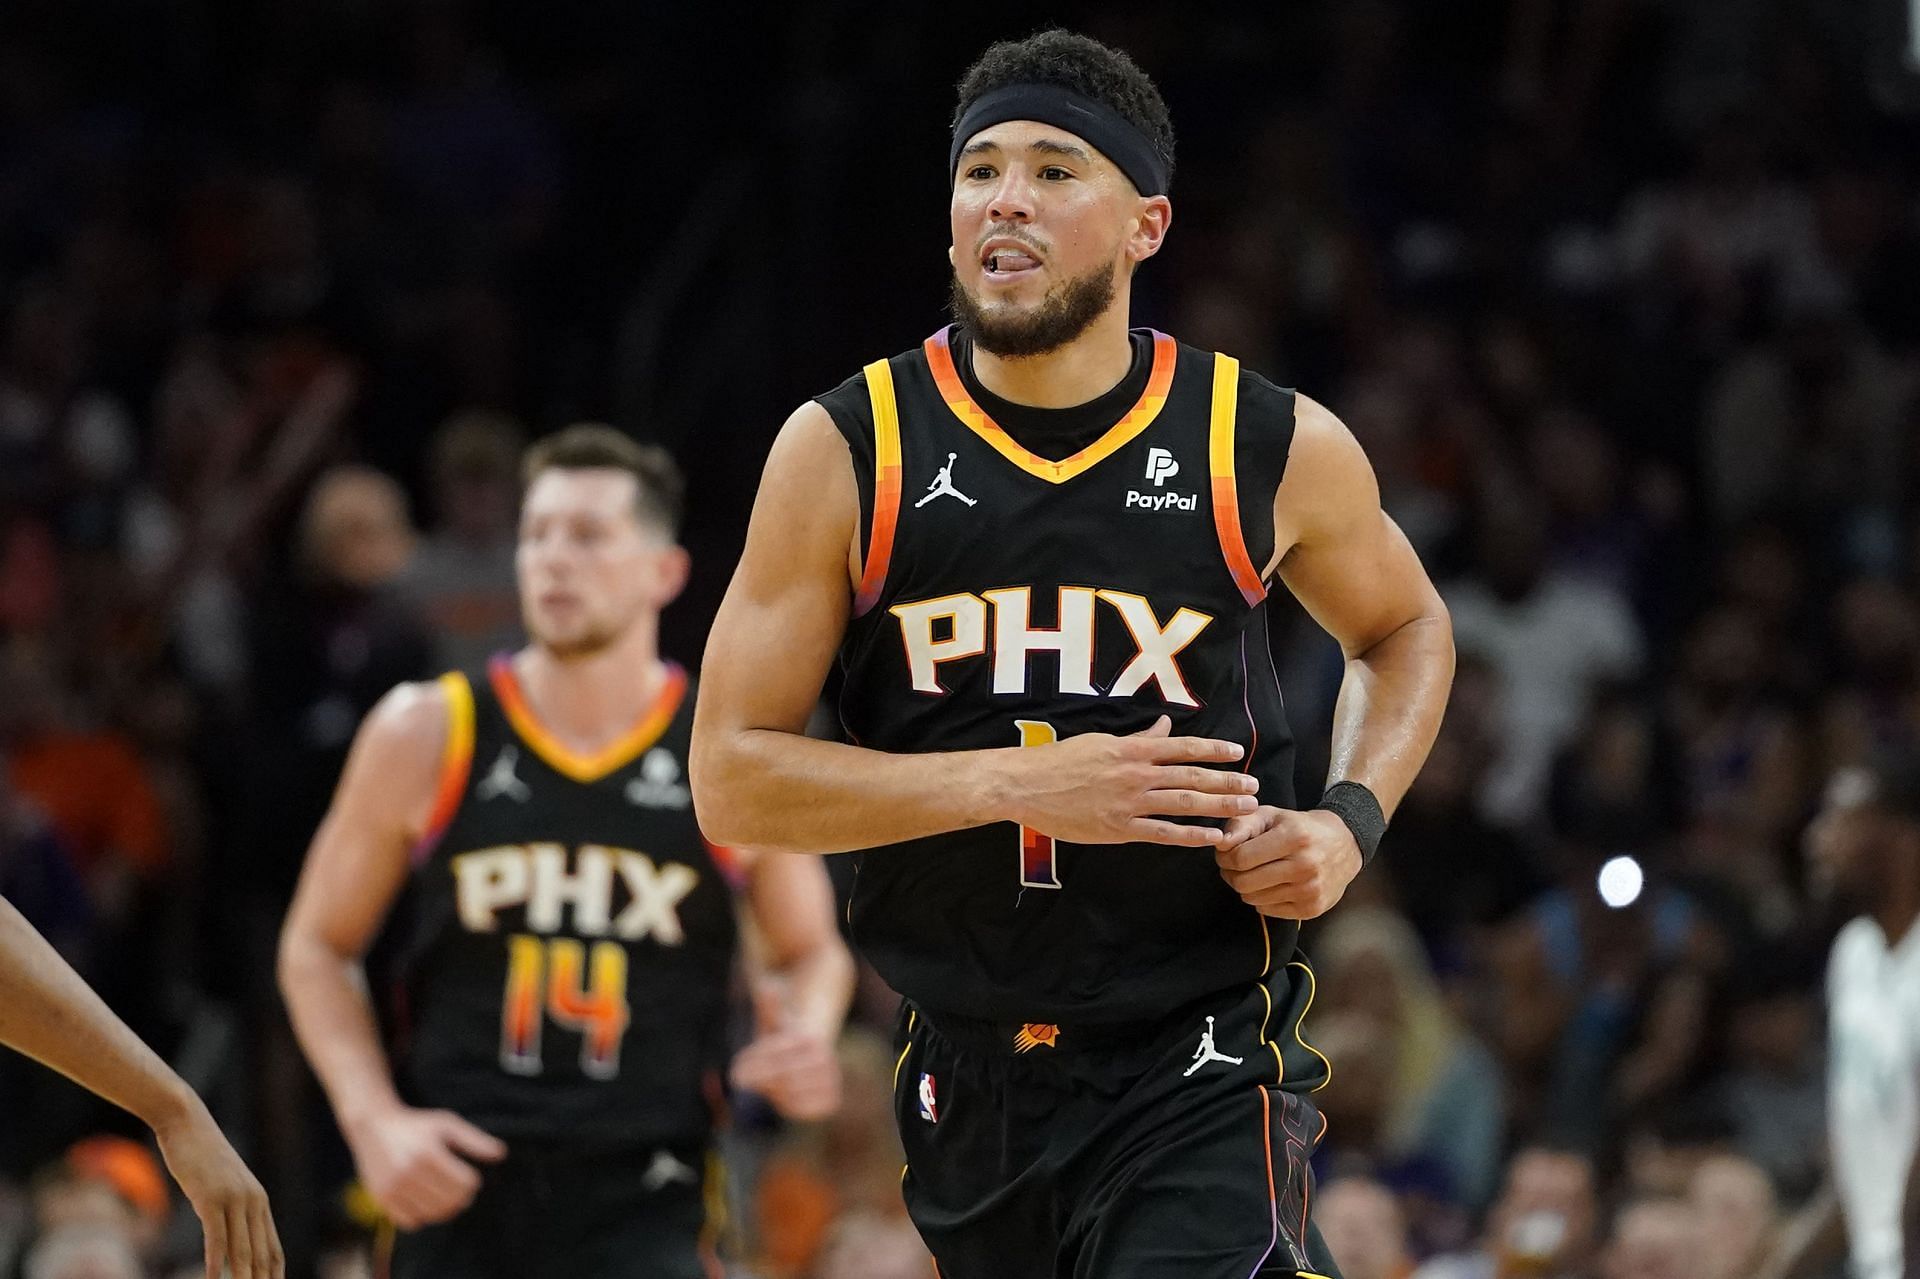 Phoenix Suns superstar shooting guard Devin Booker